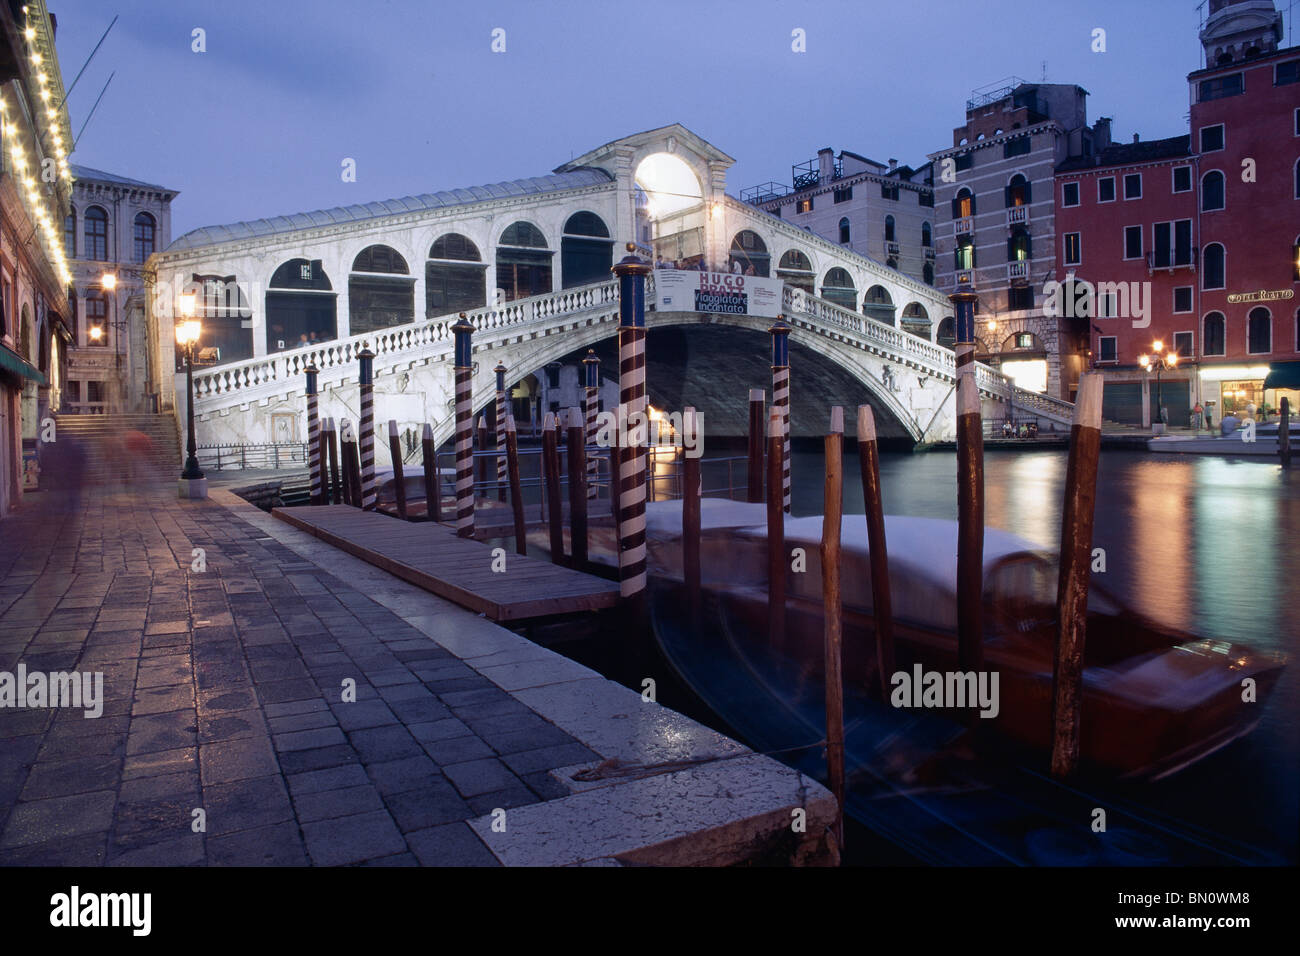 Rialto Bridge at Night, Grand Canal, Venice, Italy Stock Photo